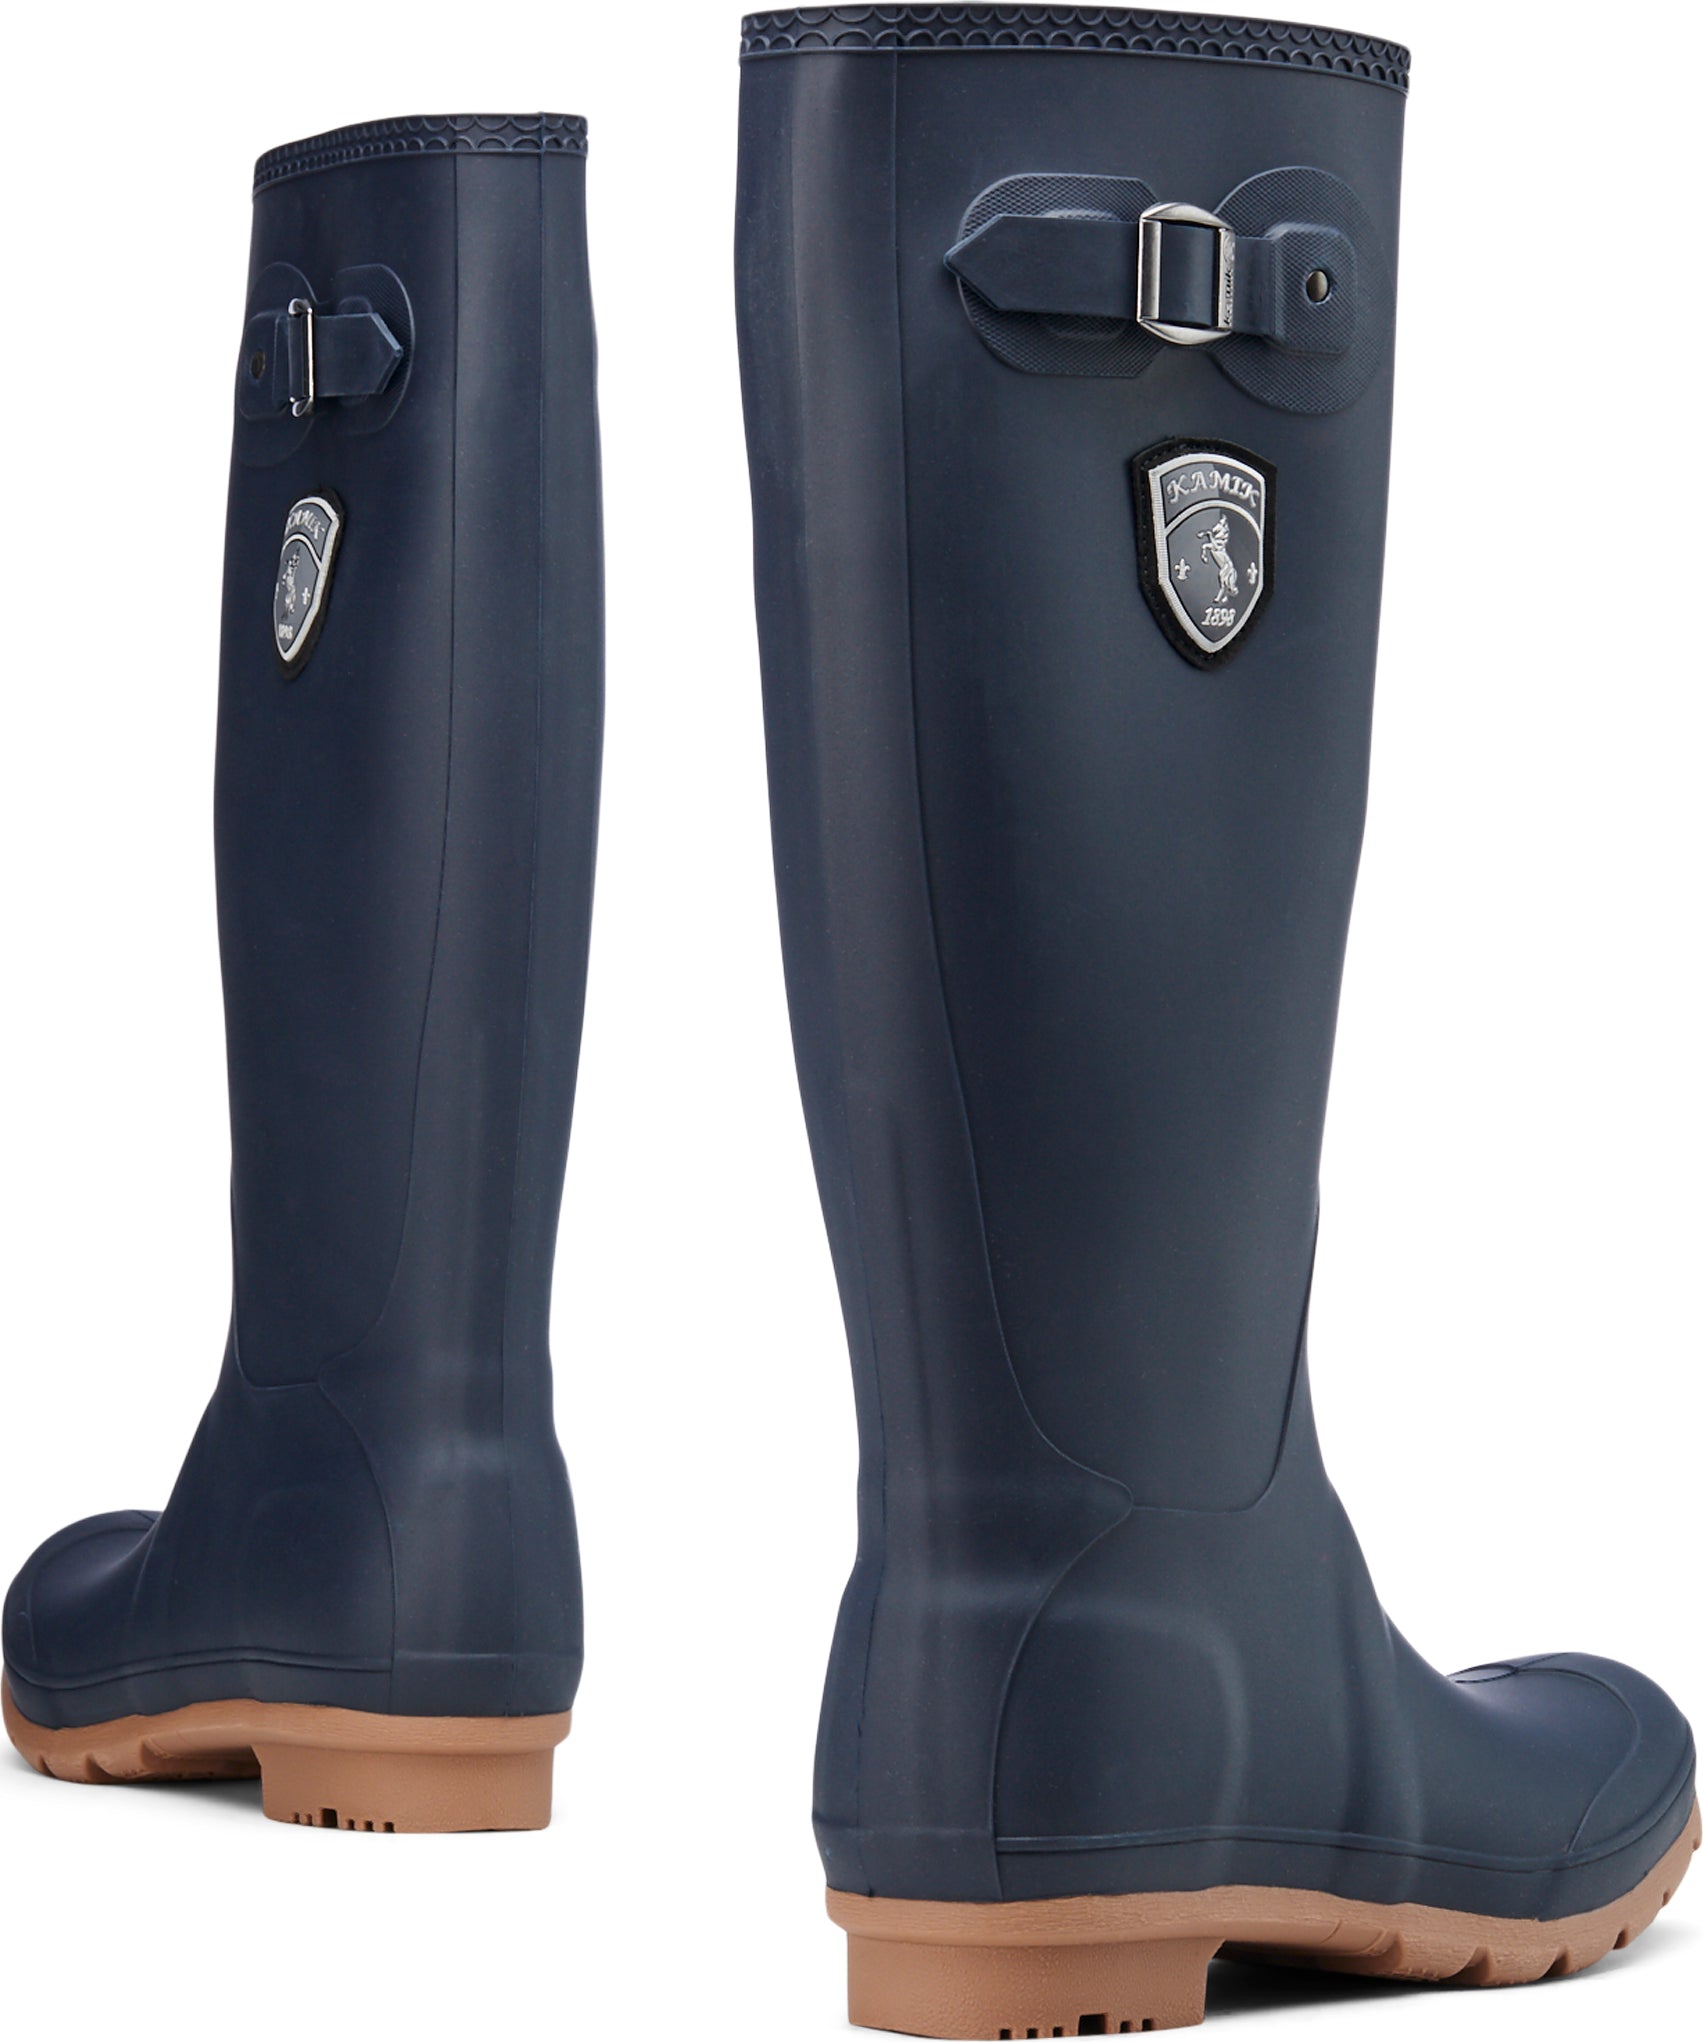 kamik jennifer tall rain boots